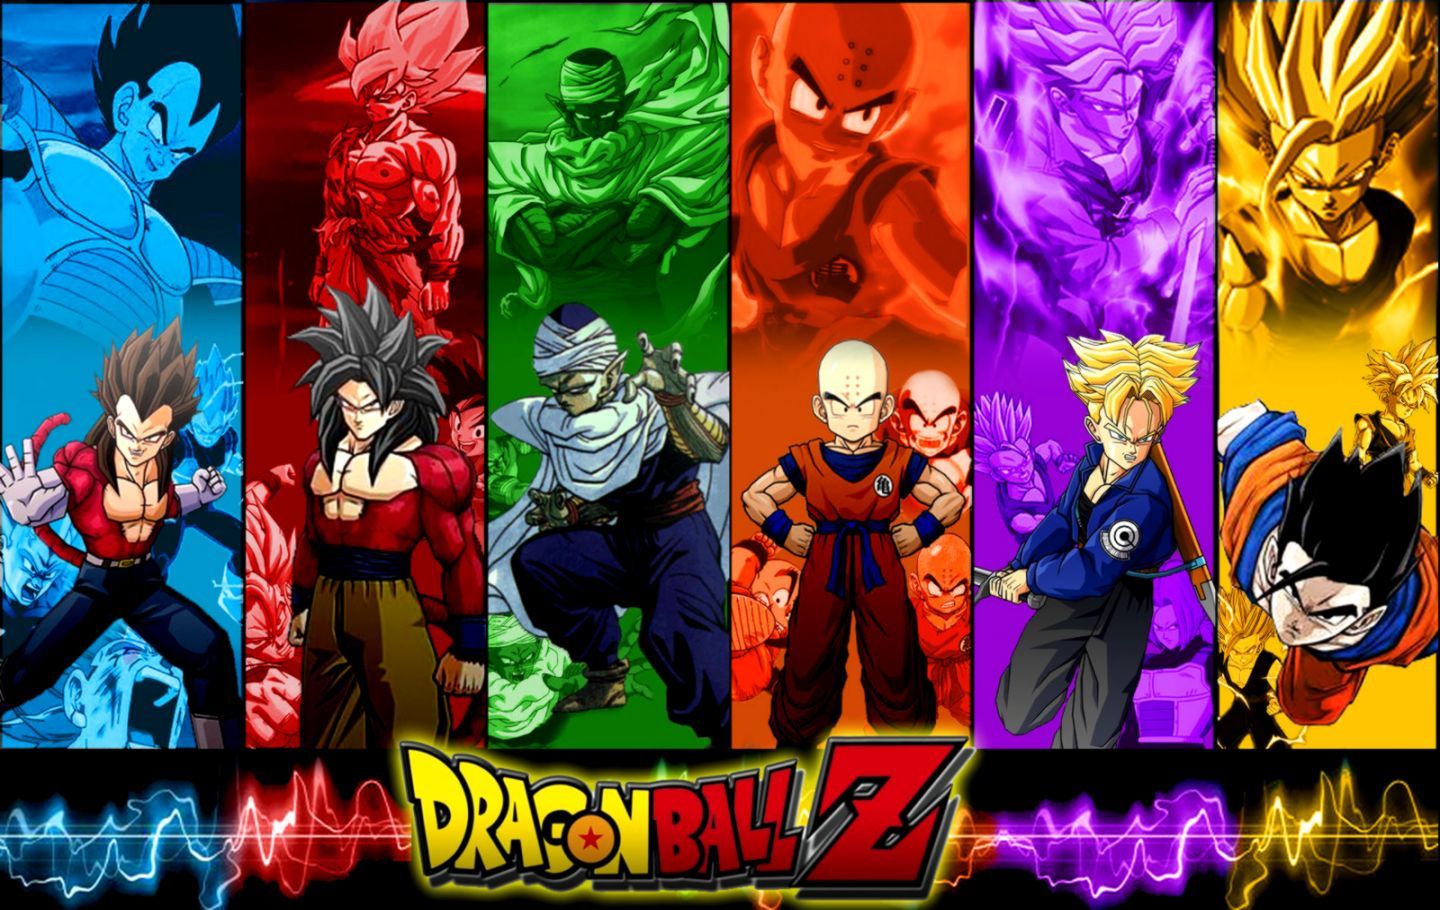 Dragon Ball Z Personajes Saiyan Wallpaper | Colección de fondos de pantalla